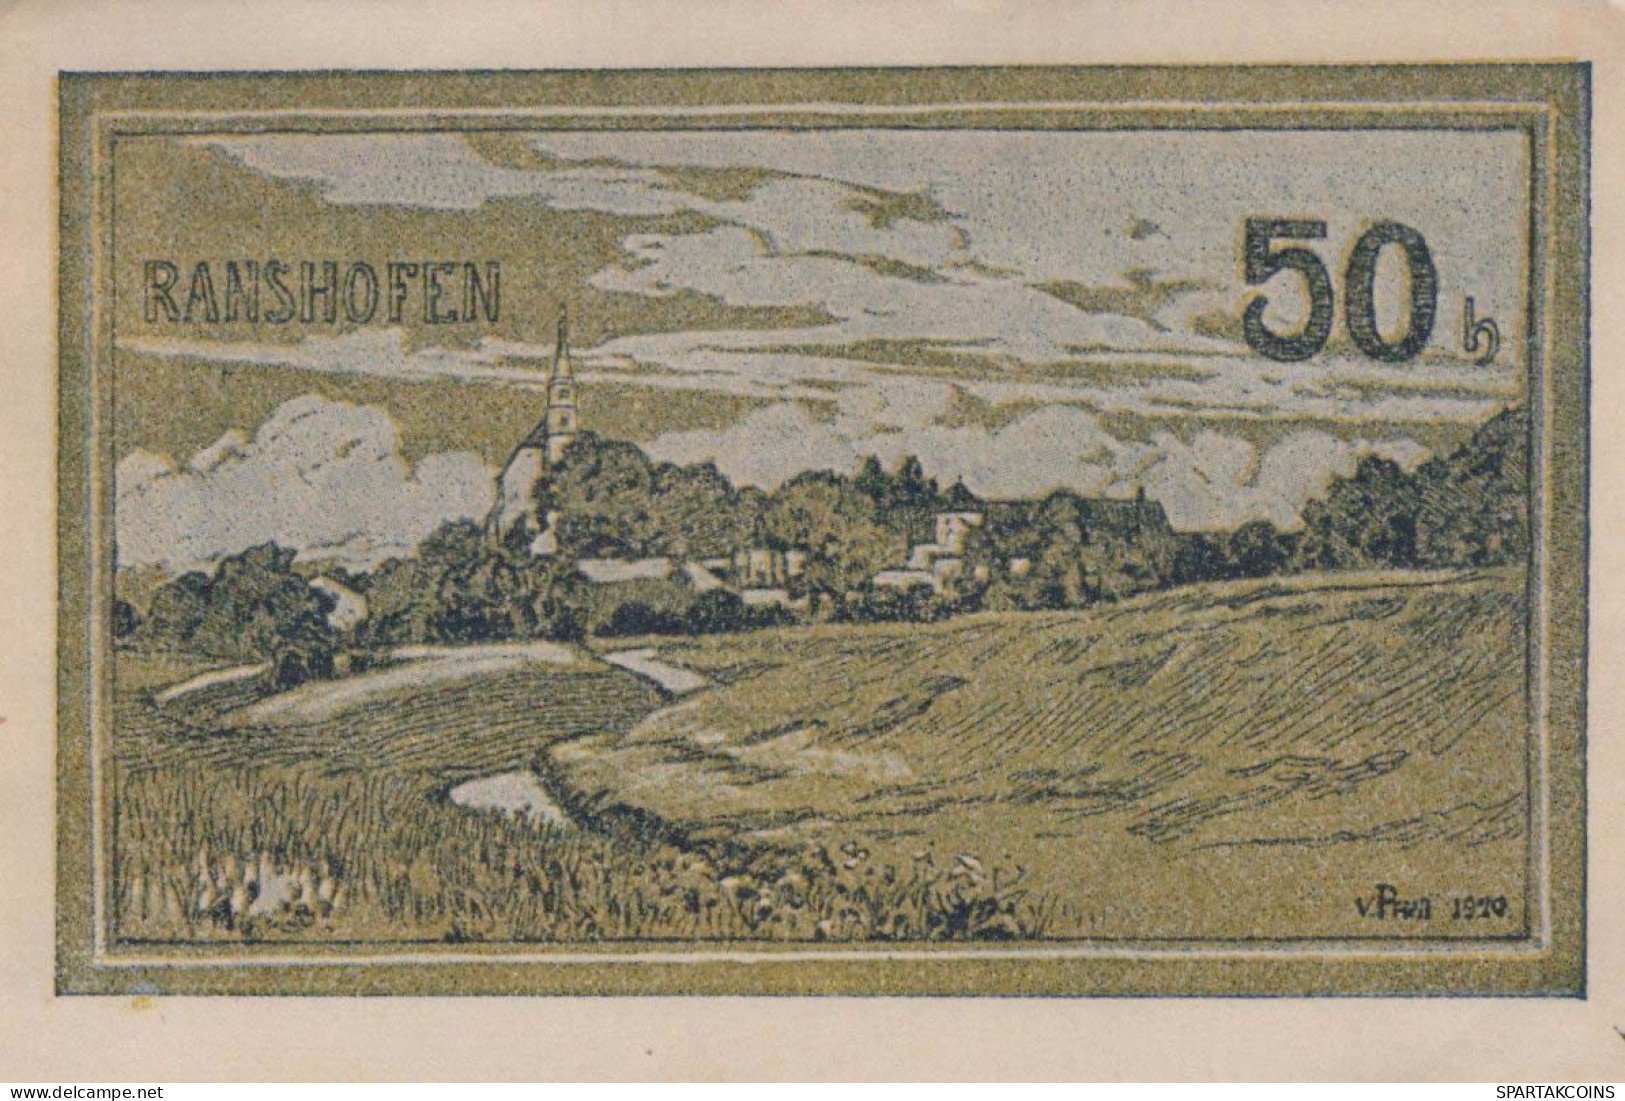 50 HELLER 1920 Stadt RANSHOFEN Oberösterreich Österreich Notgeld Banknote #PE561 - [11] Emissions Locales